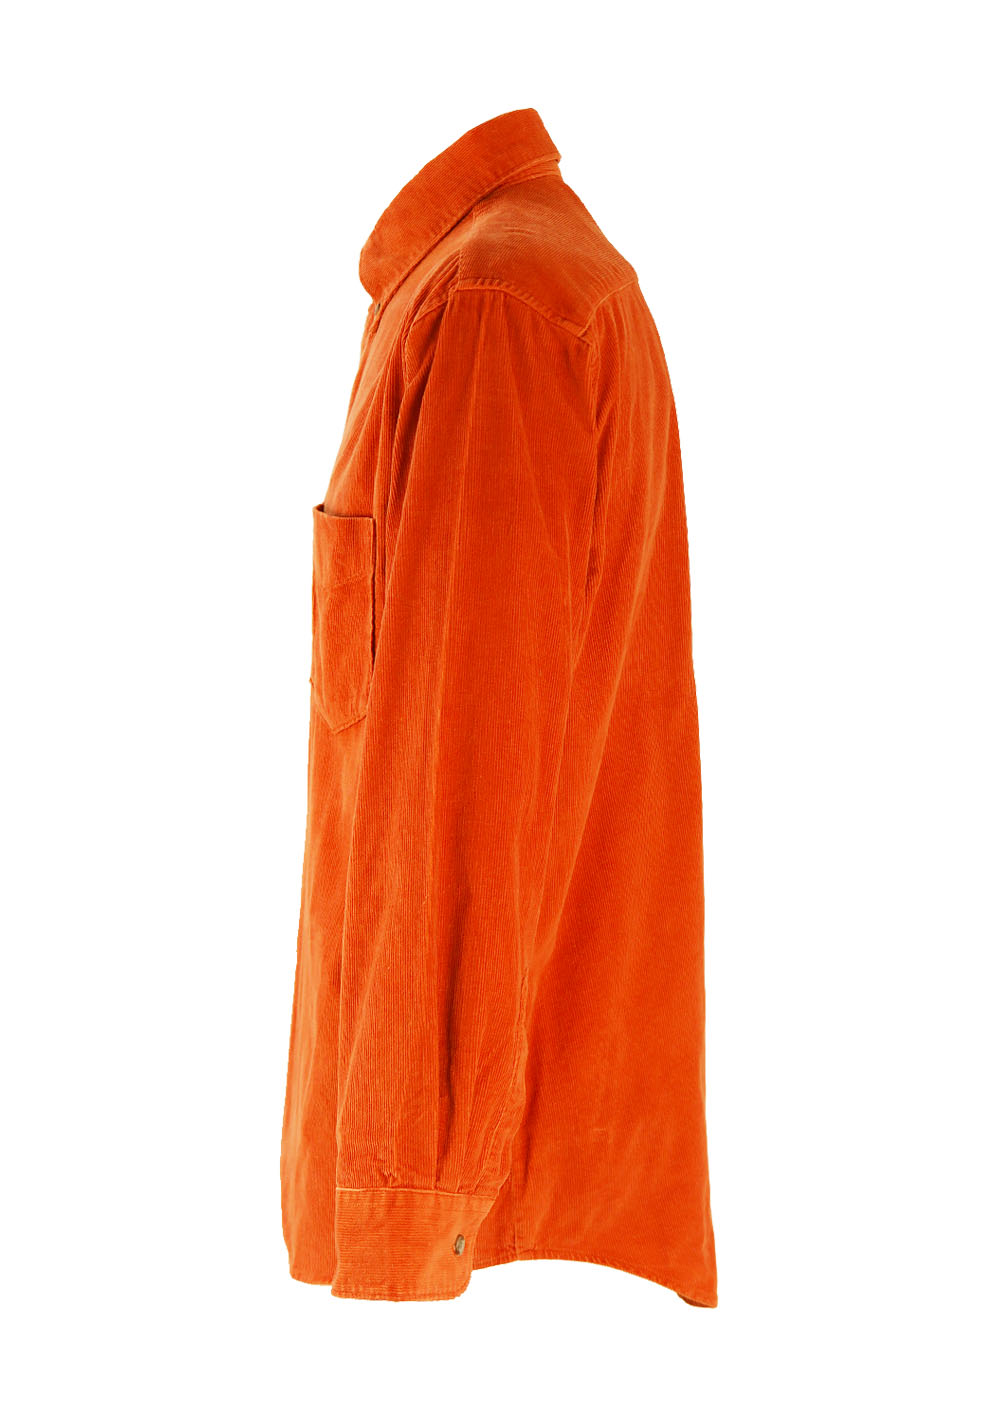 Levis Orange Corduroy Shirt - L/XL | Reign Vintage